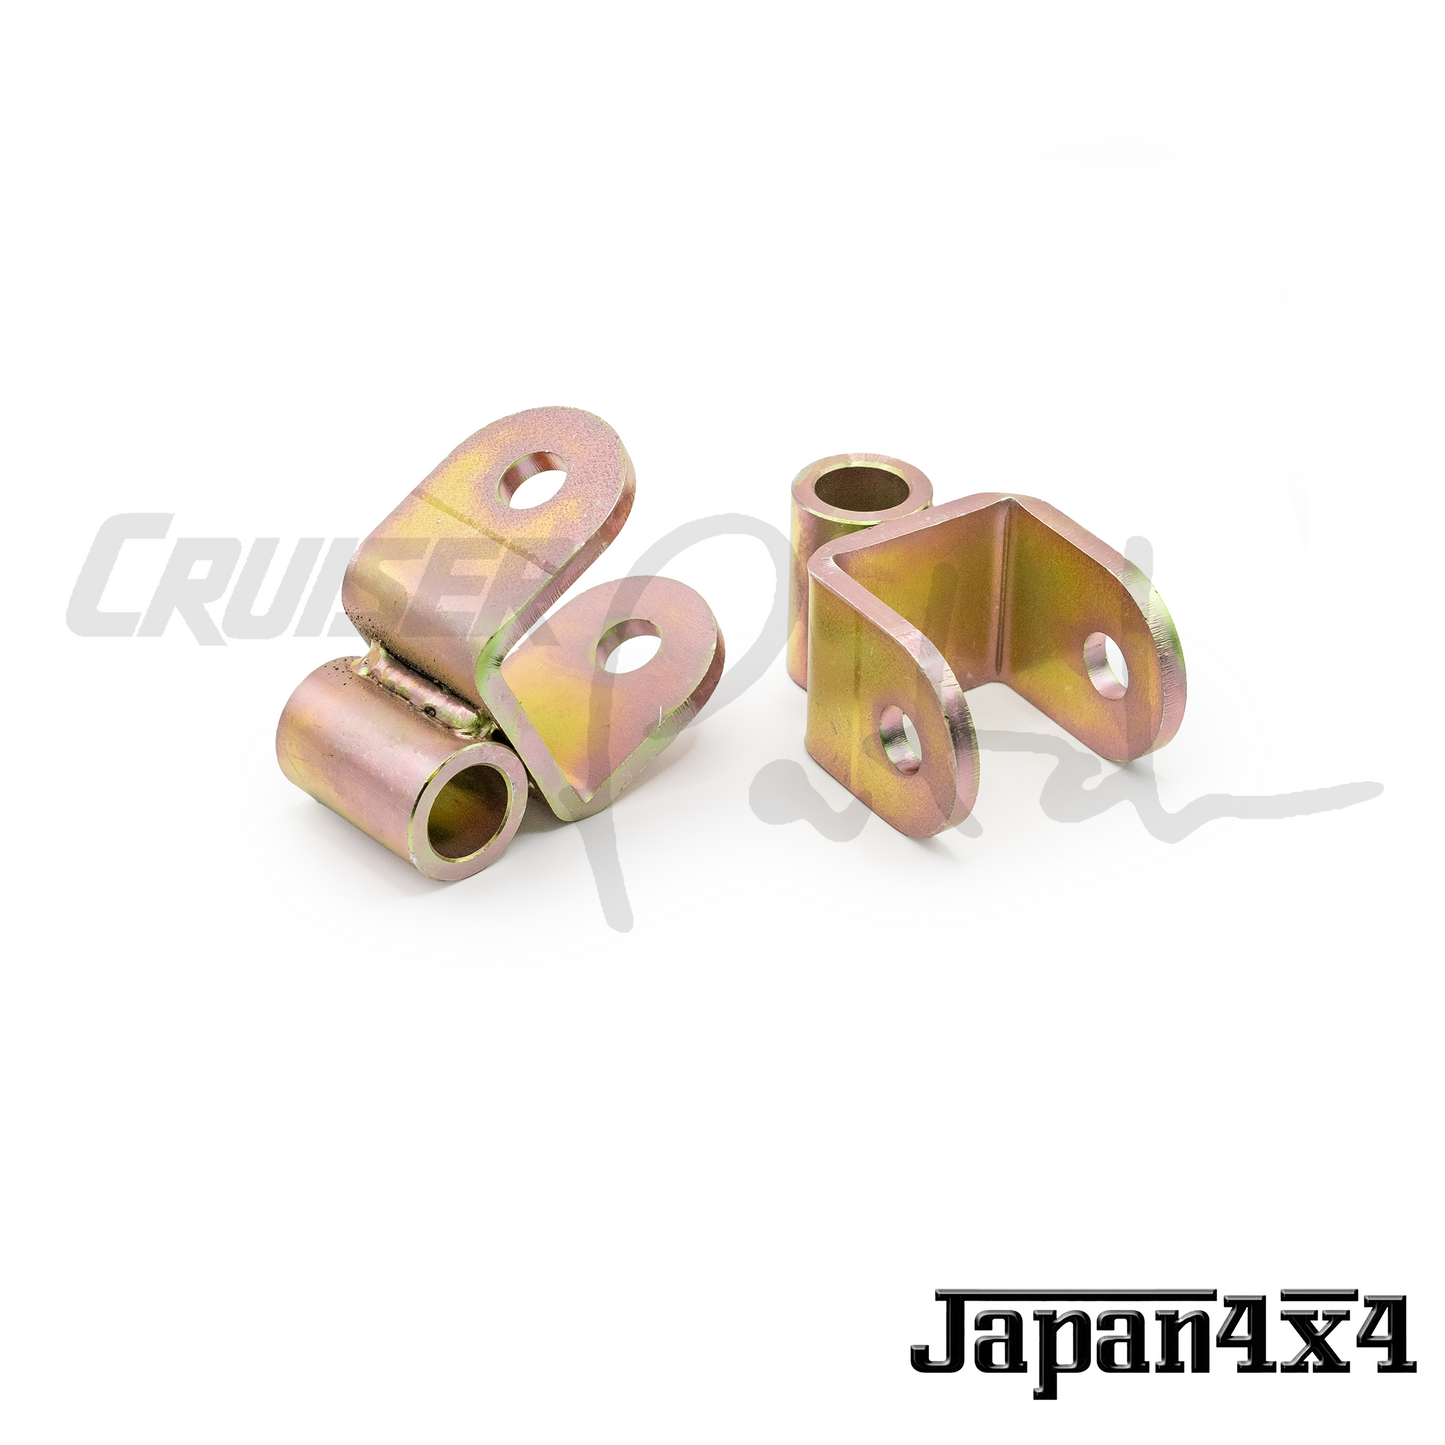 Japan 4x4 100 Series AHC Shock Spacers